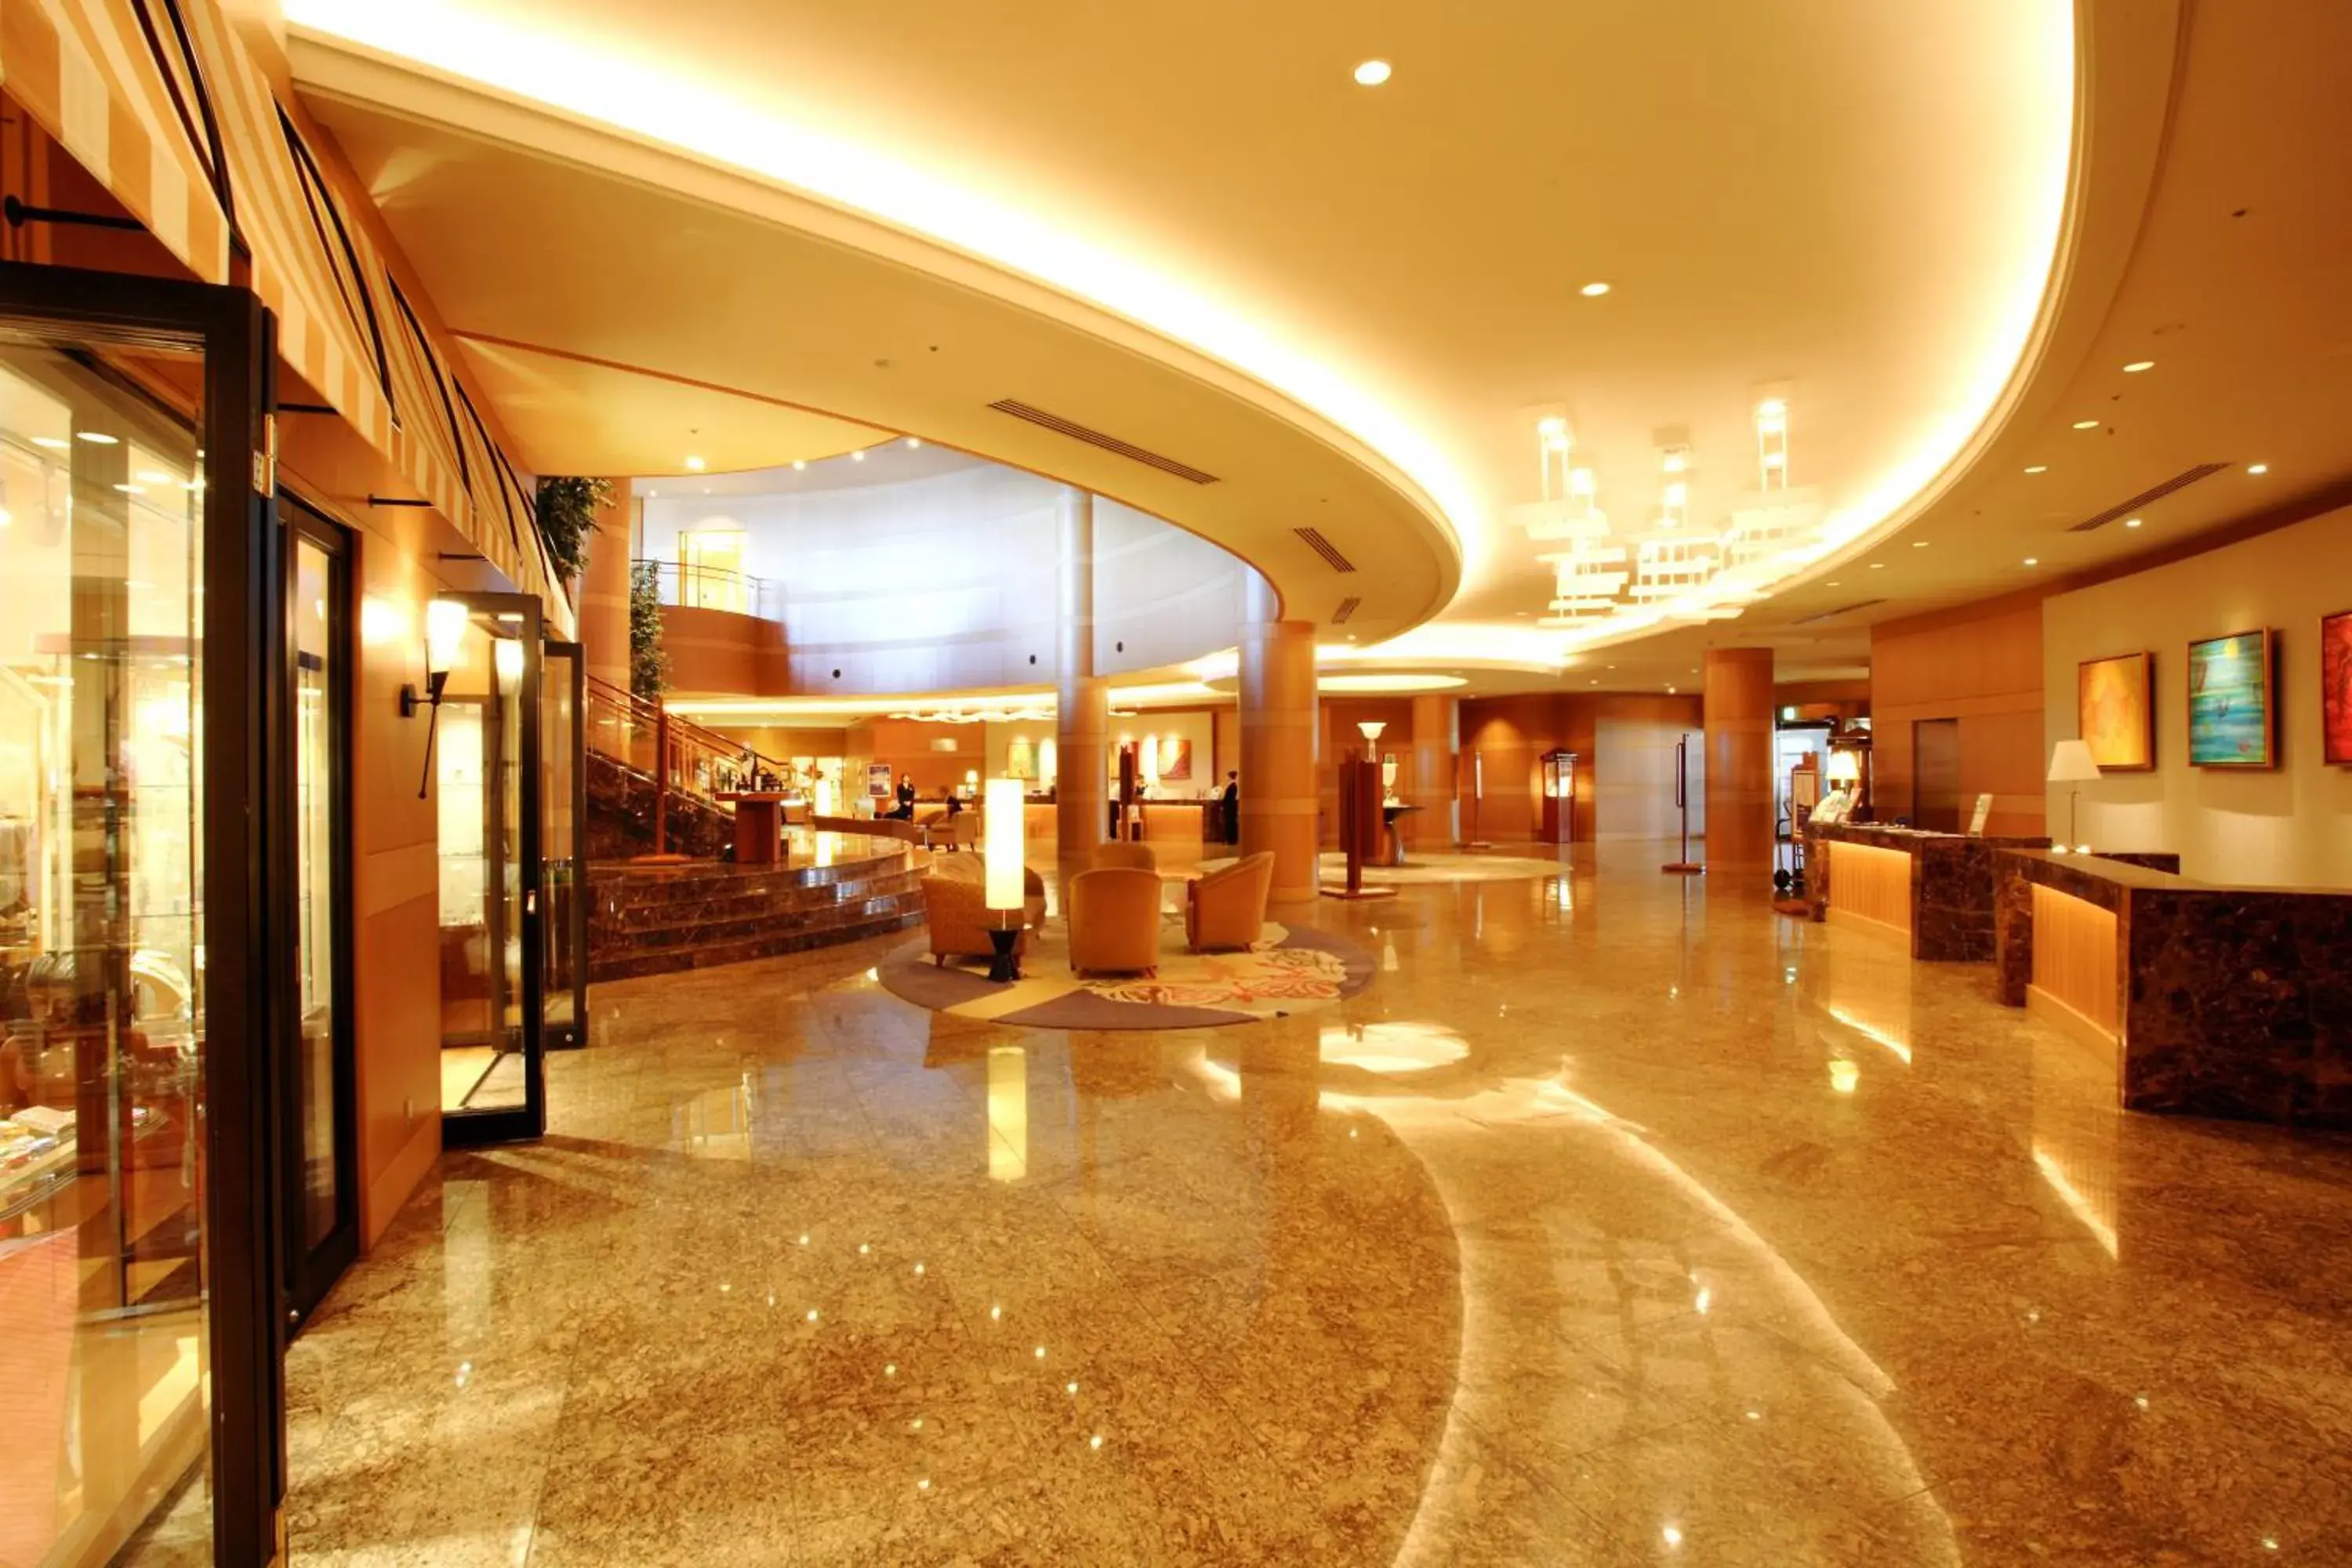 Lobby or reception, Lobby/Reception in Grand Park Otaru Hotel